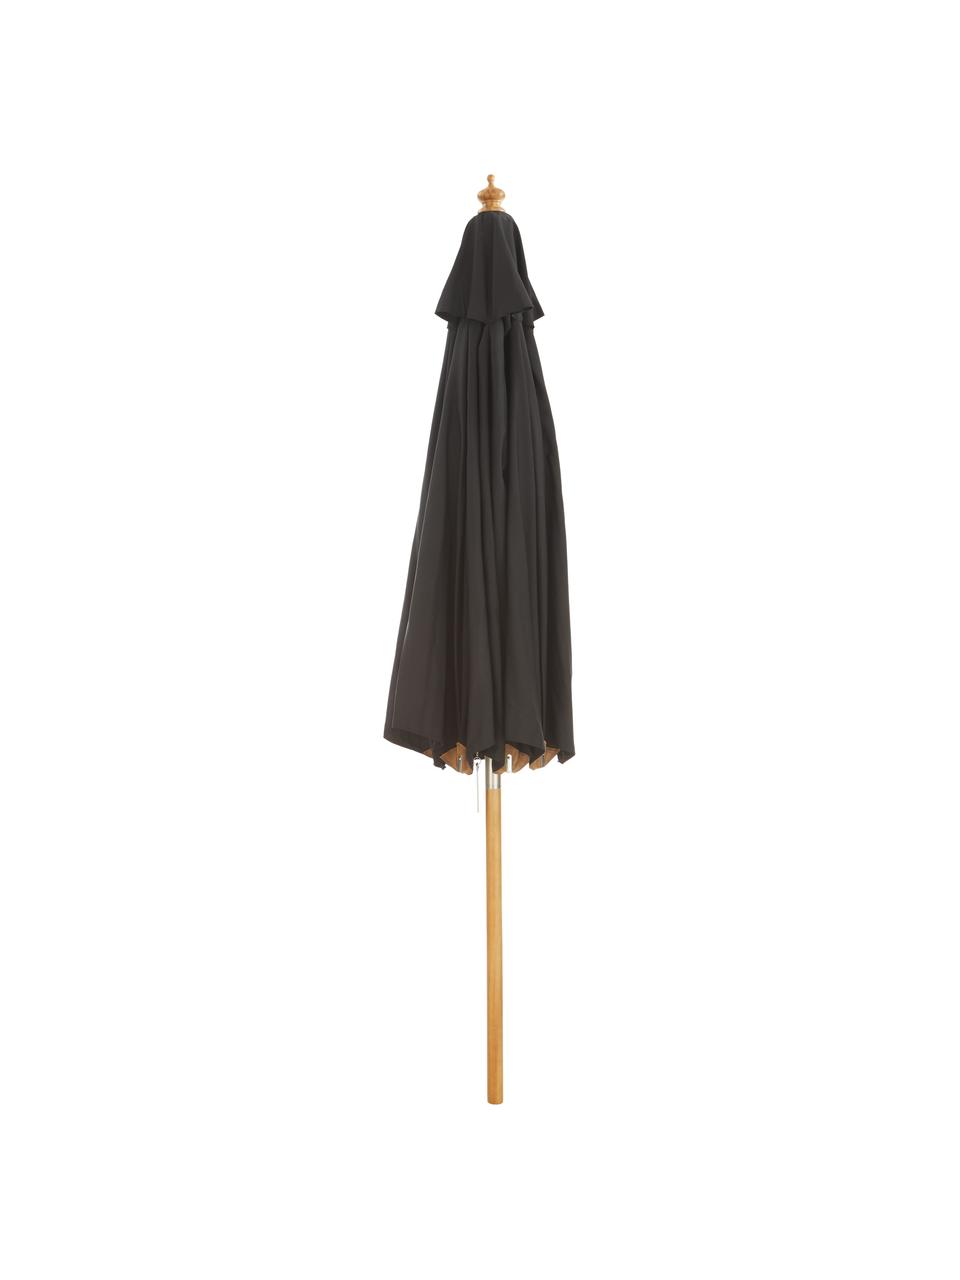 Ronde parasol Capri in zwart, Ø 300 cm, Wit gewassen, zwart, Ø 300 x H 265 cm